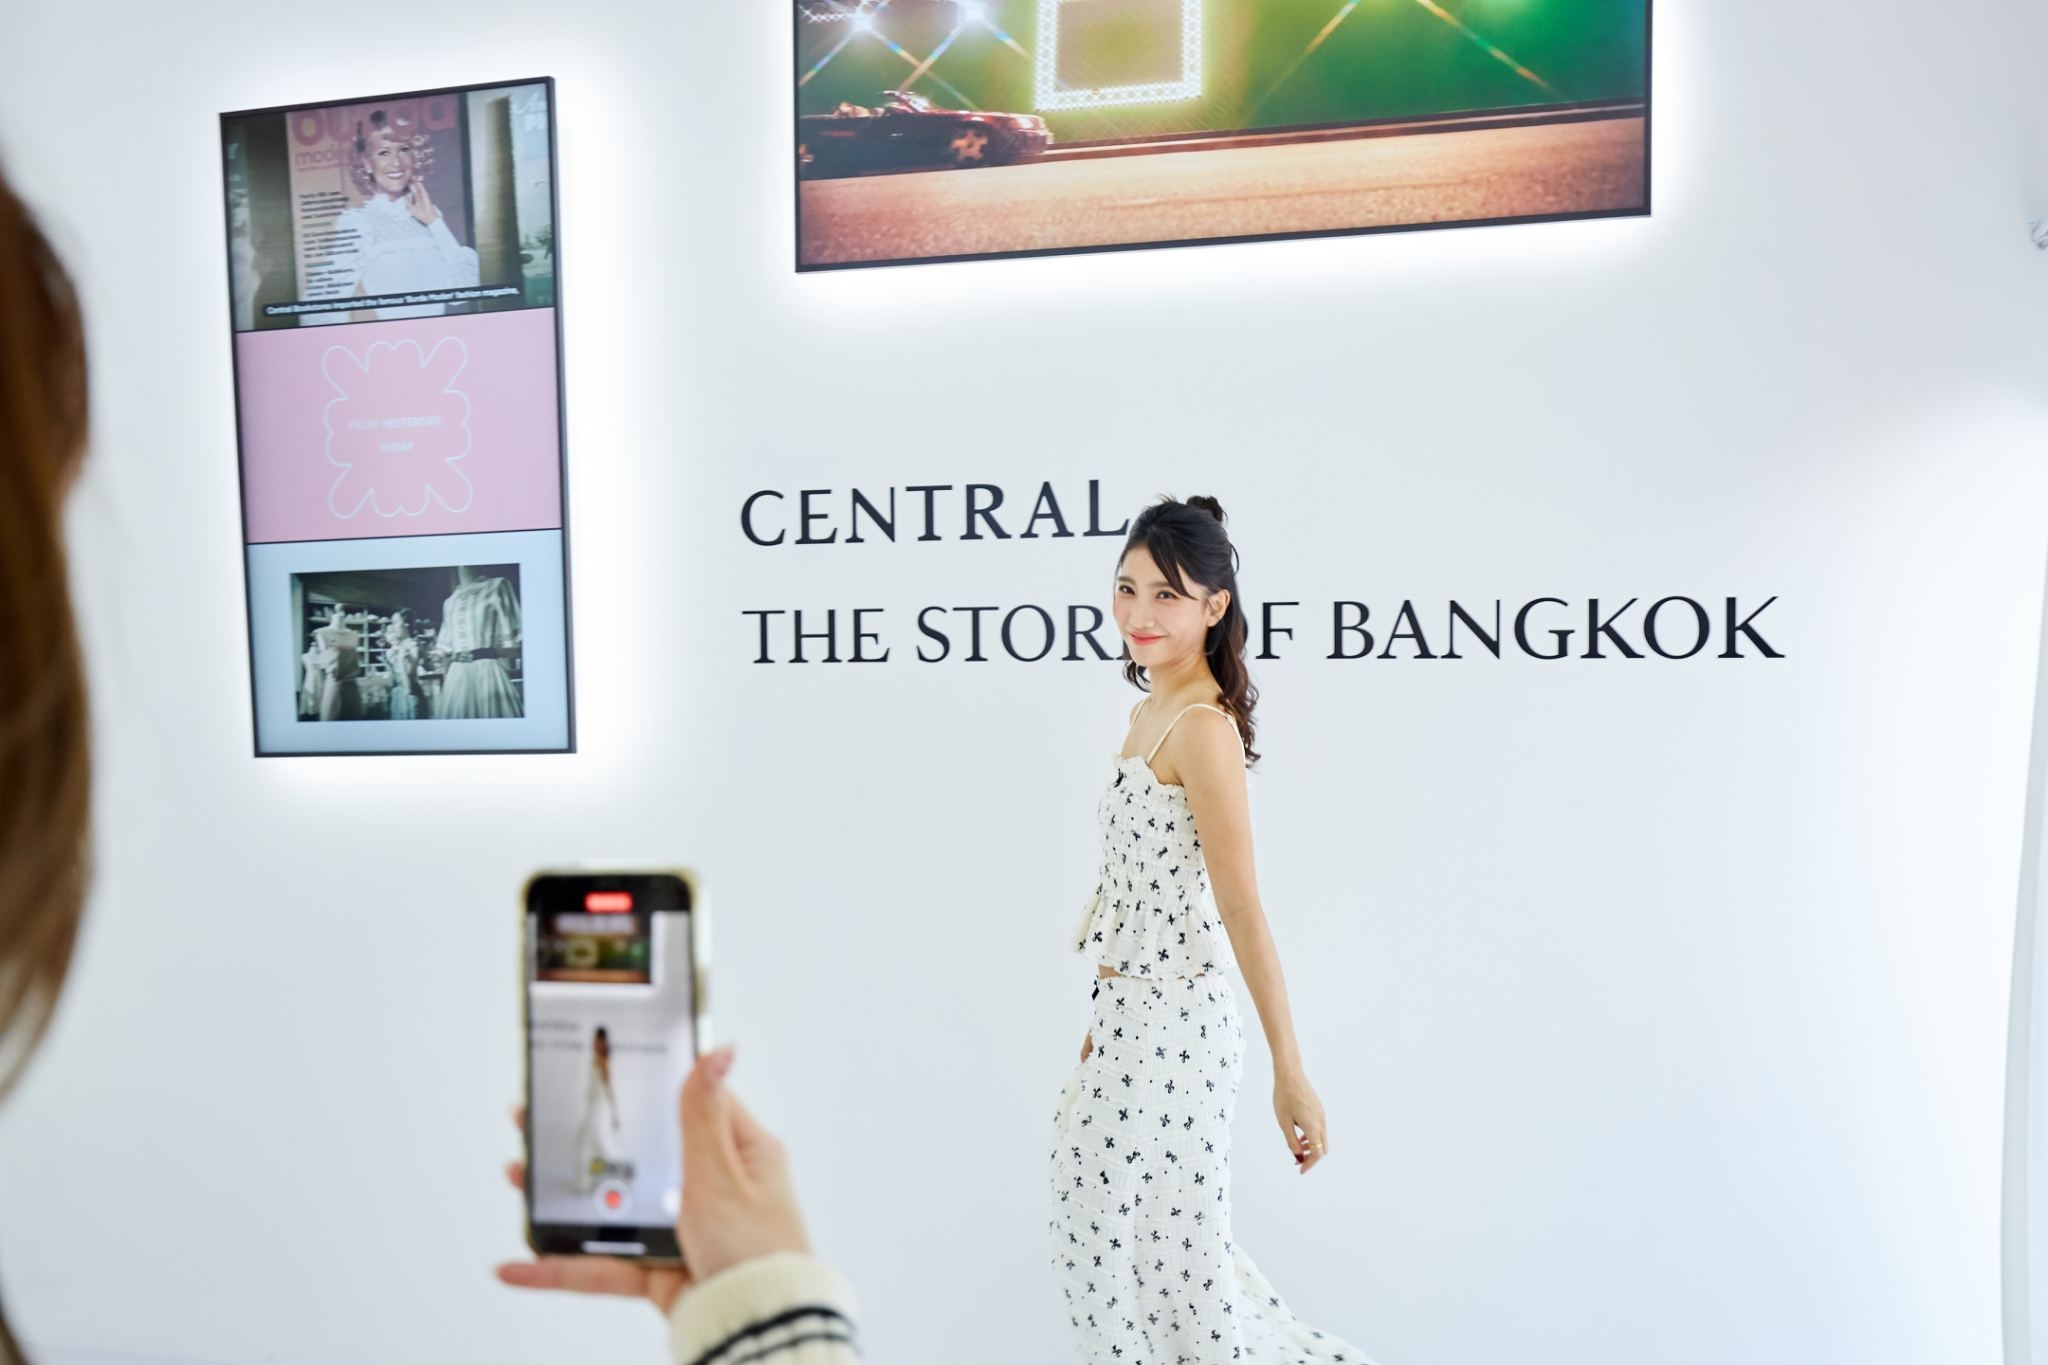 ห้างเซ็นทรัล ในเครือเซ็นทรัล รีเทล จัดแสดง “THE BOX กล่องแห่งกาลเวลา” ถ่ายทอดเรื่องราวห้างเซ็นทรัลชิดลมกับเส้นทางสู่การเป็น ‘The Store Of Bangkok’ ของคนไทย ในงาน “Bangkok Design Week 2024” ภายใต้ธีม ‘Livable Scape คนยิ่งทำ เมืองยิ่งดี’